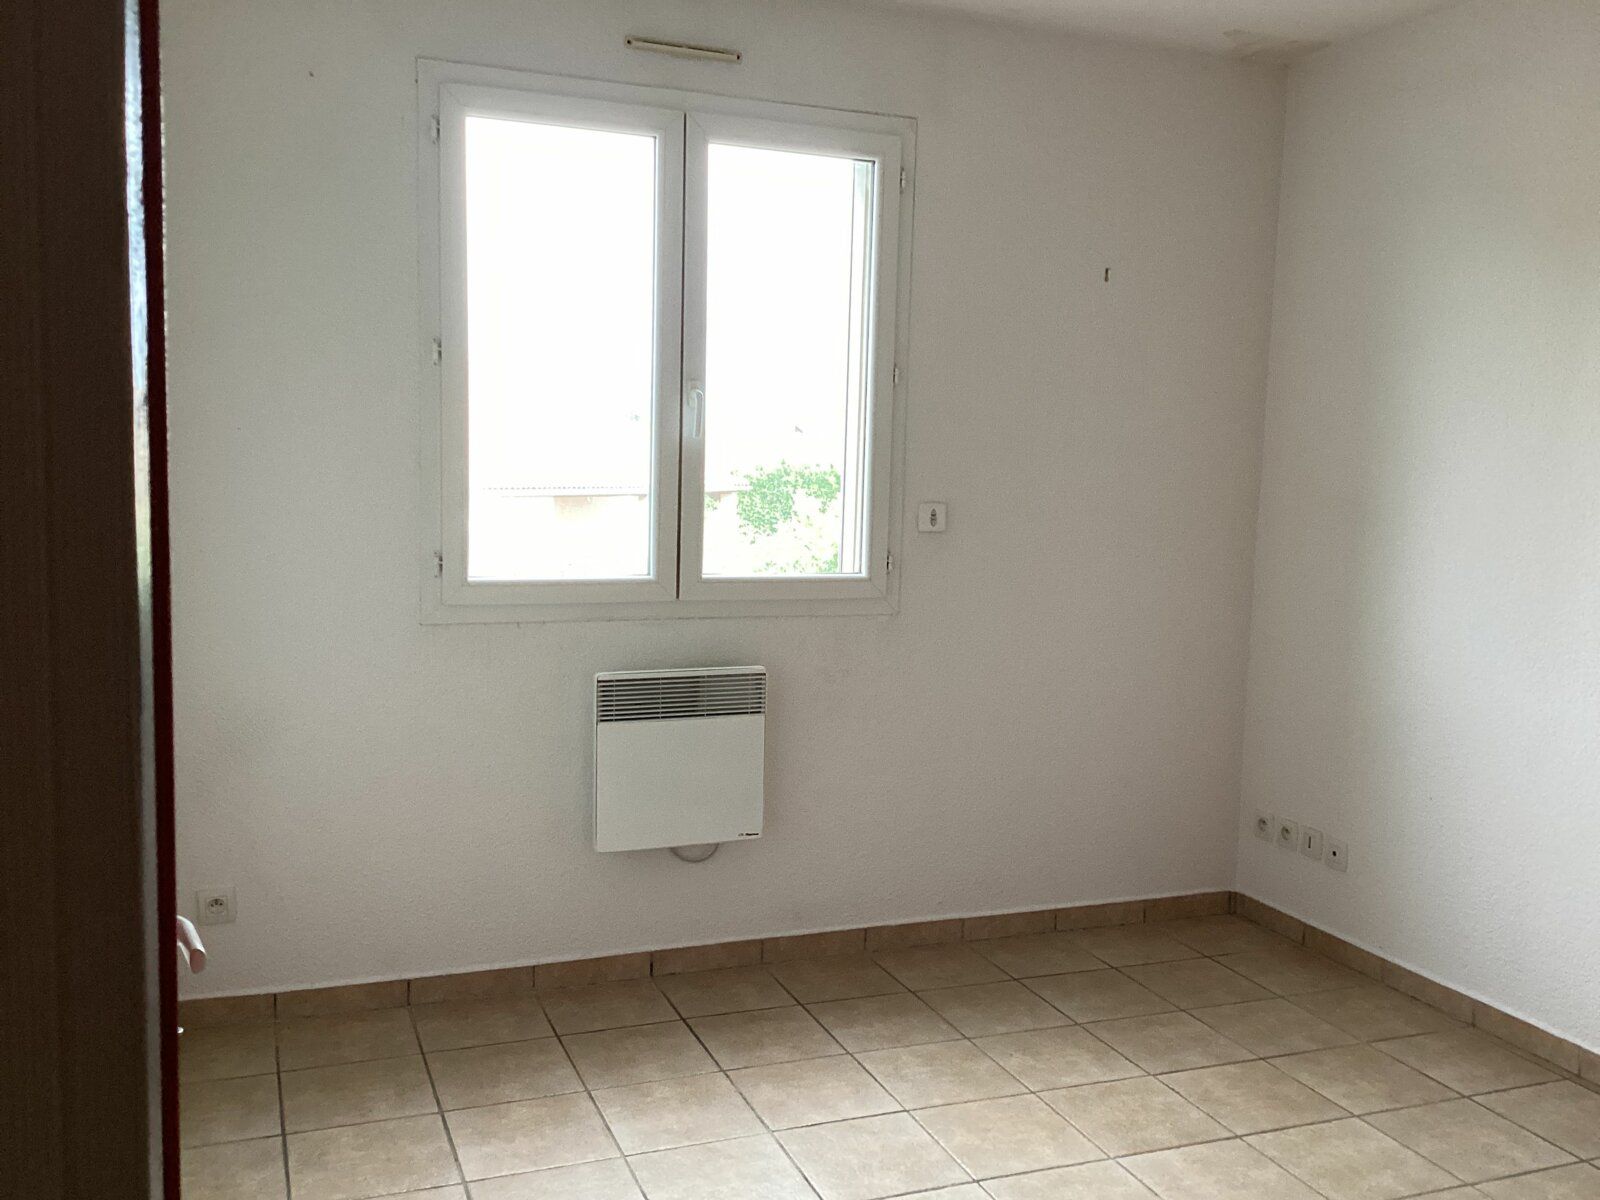 Maison à vendre 4 80m2 à Saint-Marcel-lès-Valence vignette-8